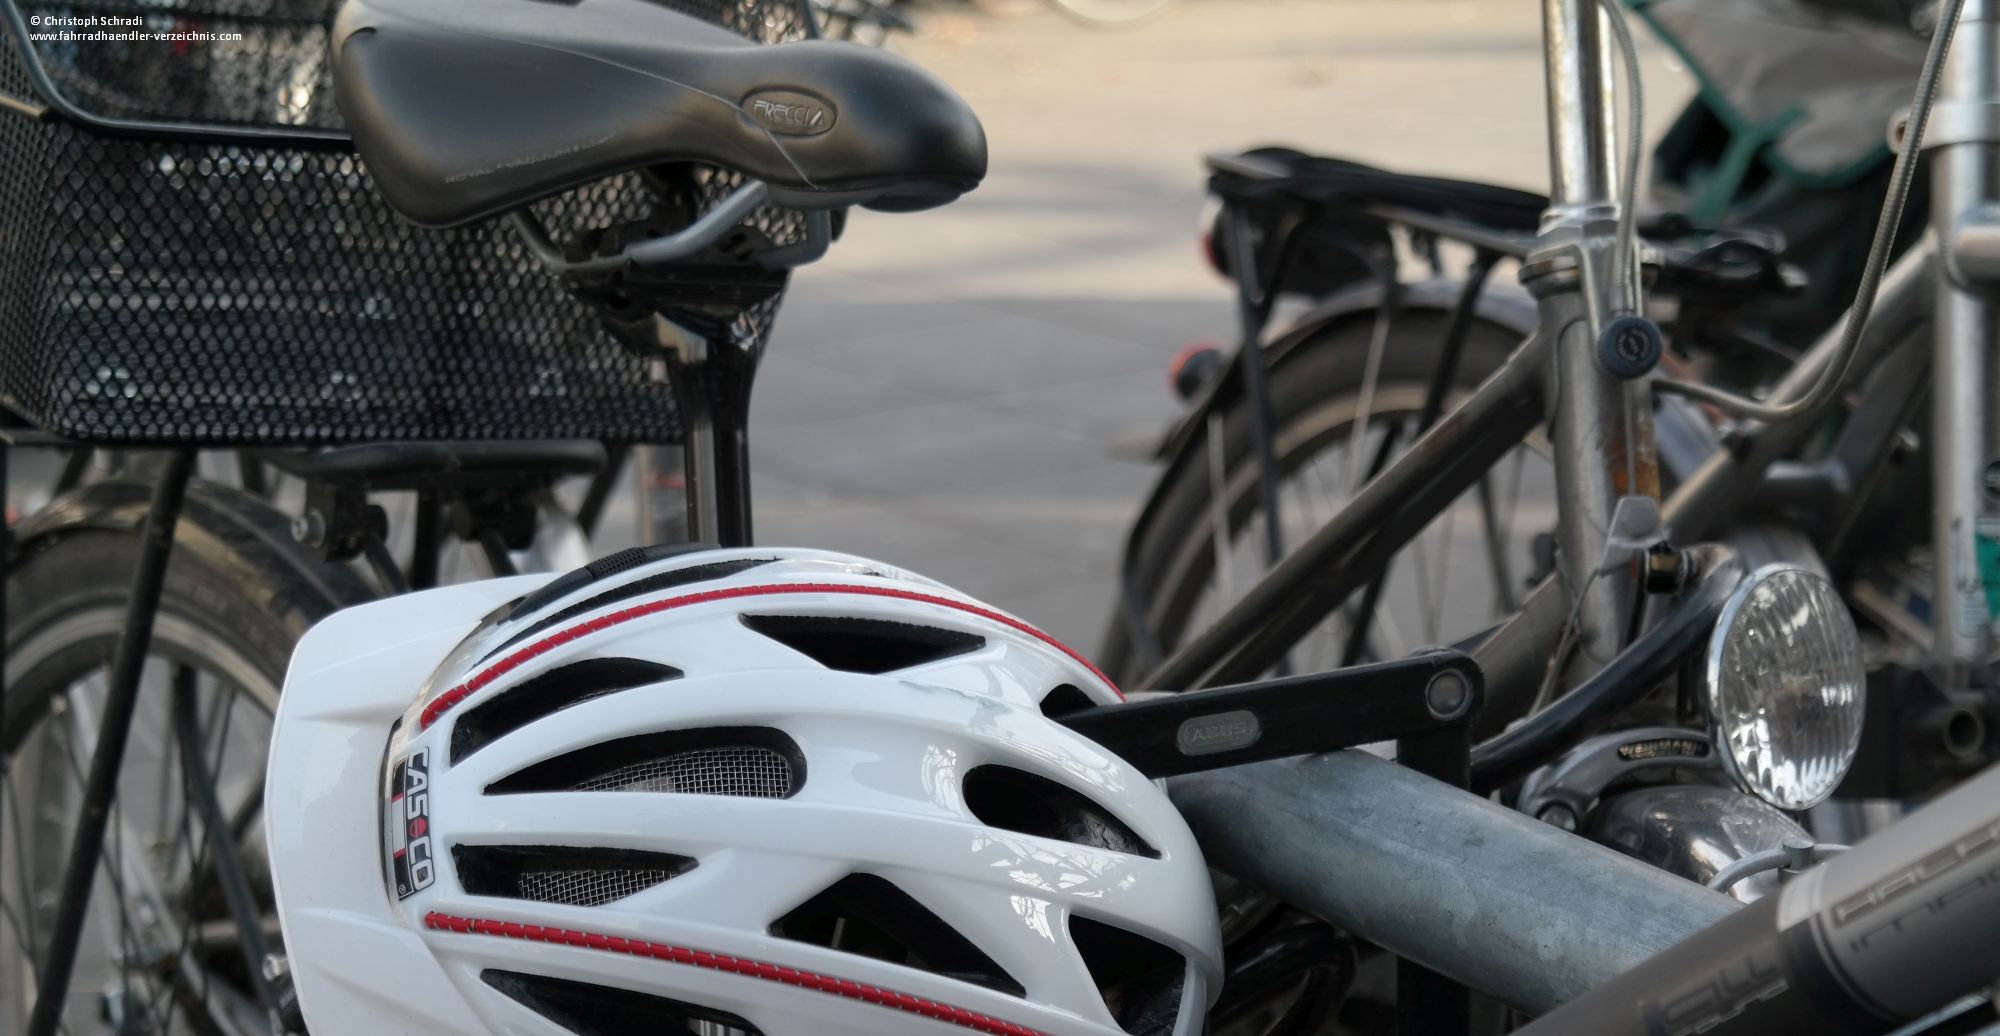 Um ein Fahrrad vor Diebstahl zu schützen kann etwa ein gutes Fahrradschloss helfen